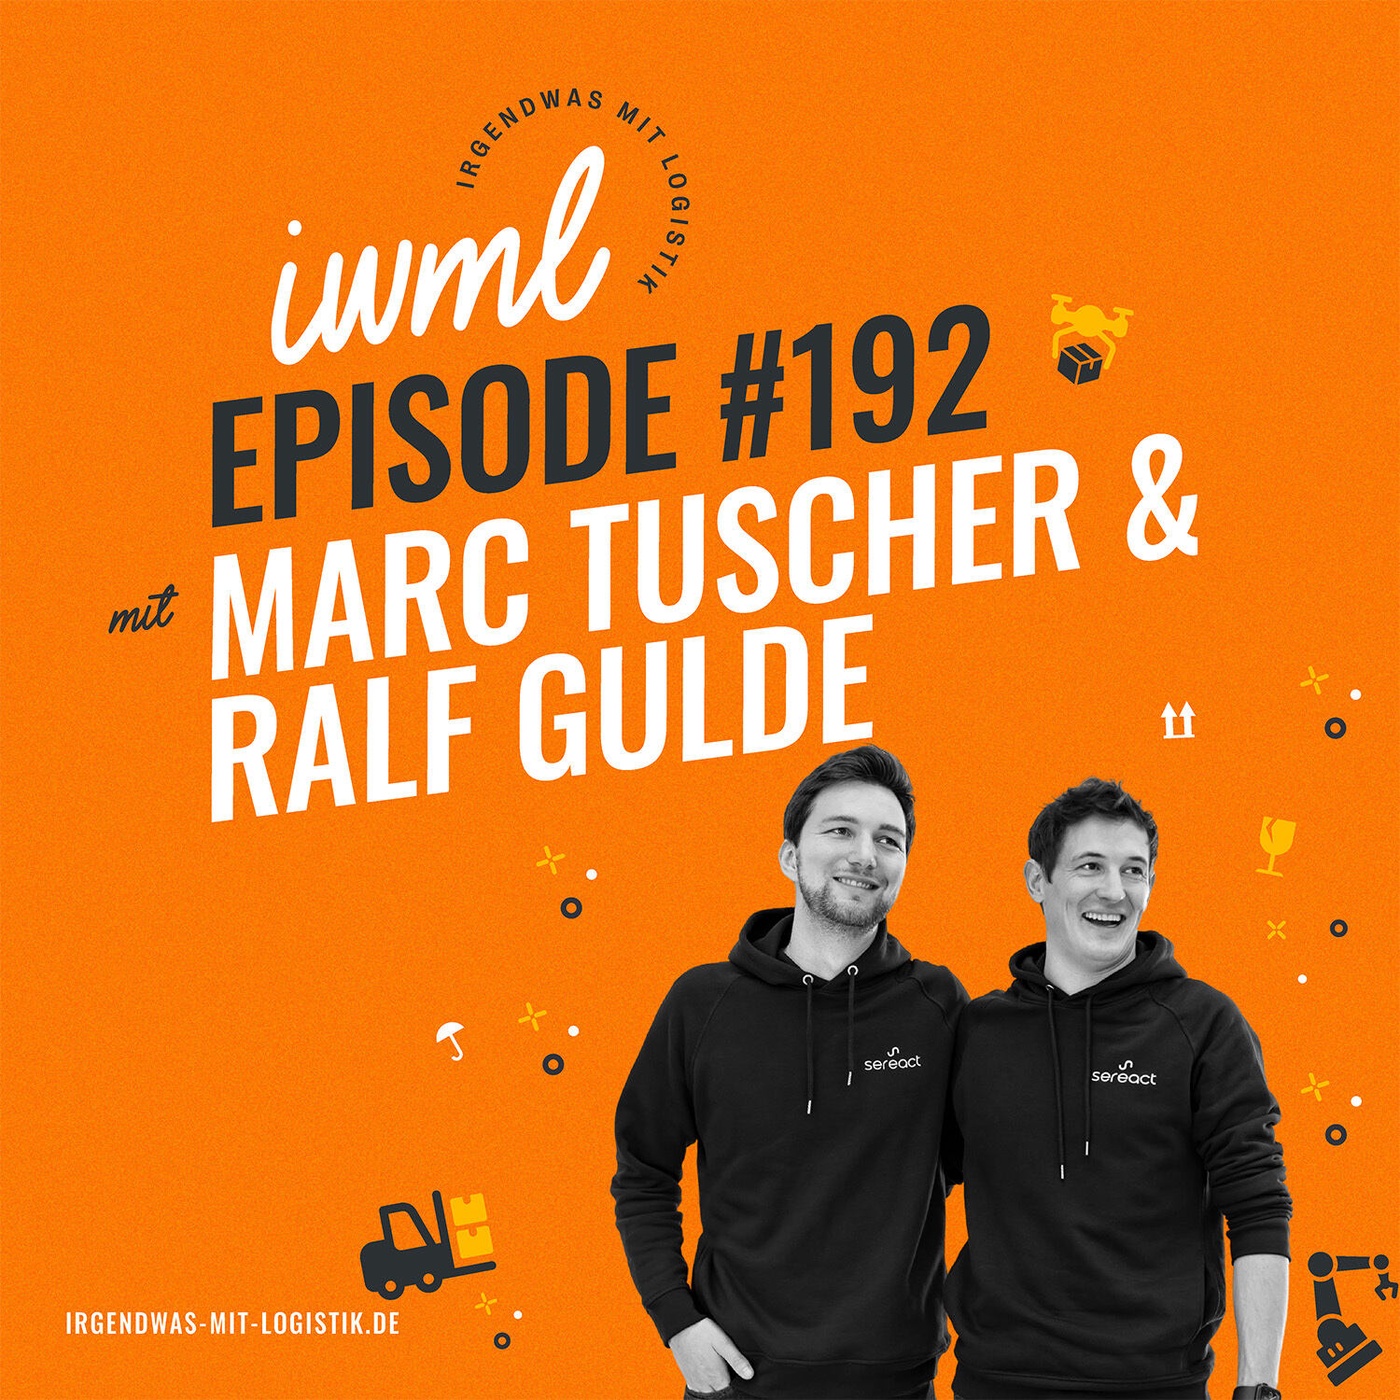 IWML #192 mit Marc Tuscher und Ralf Gulde von Sereact